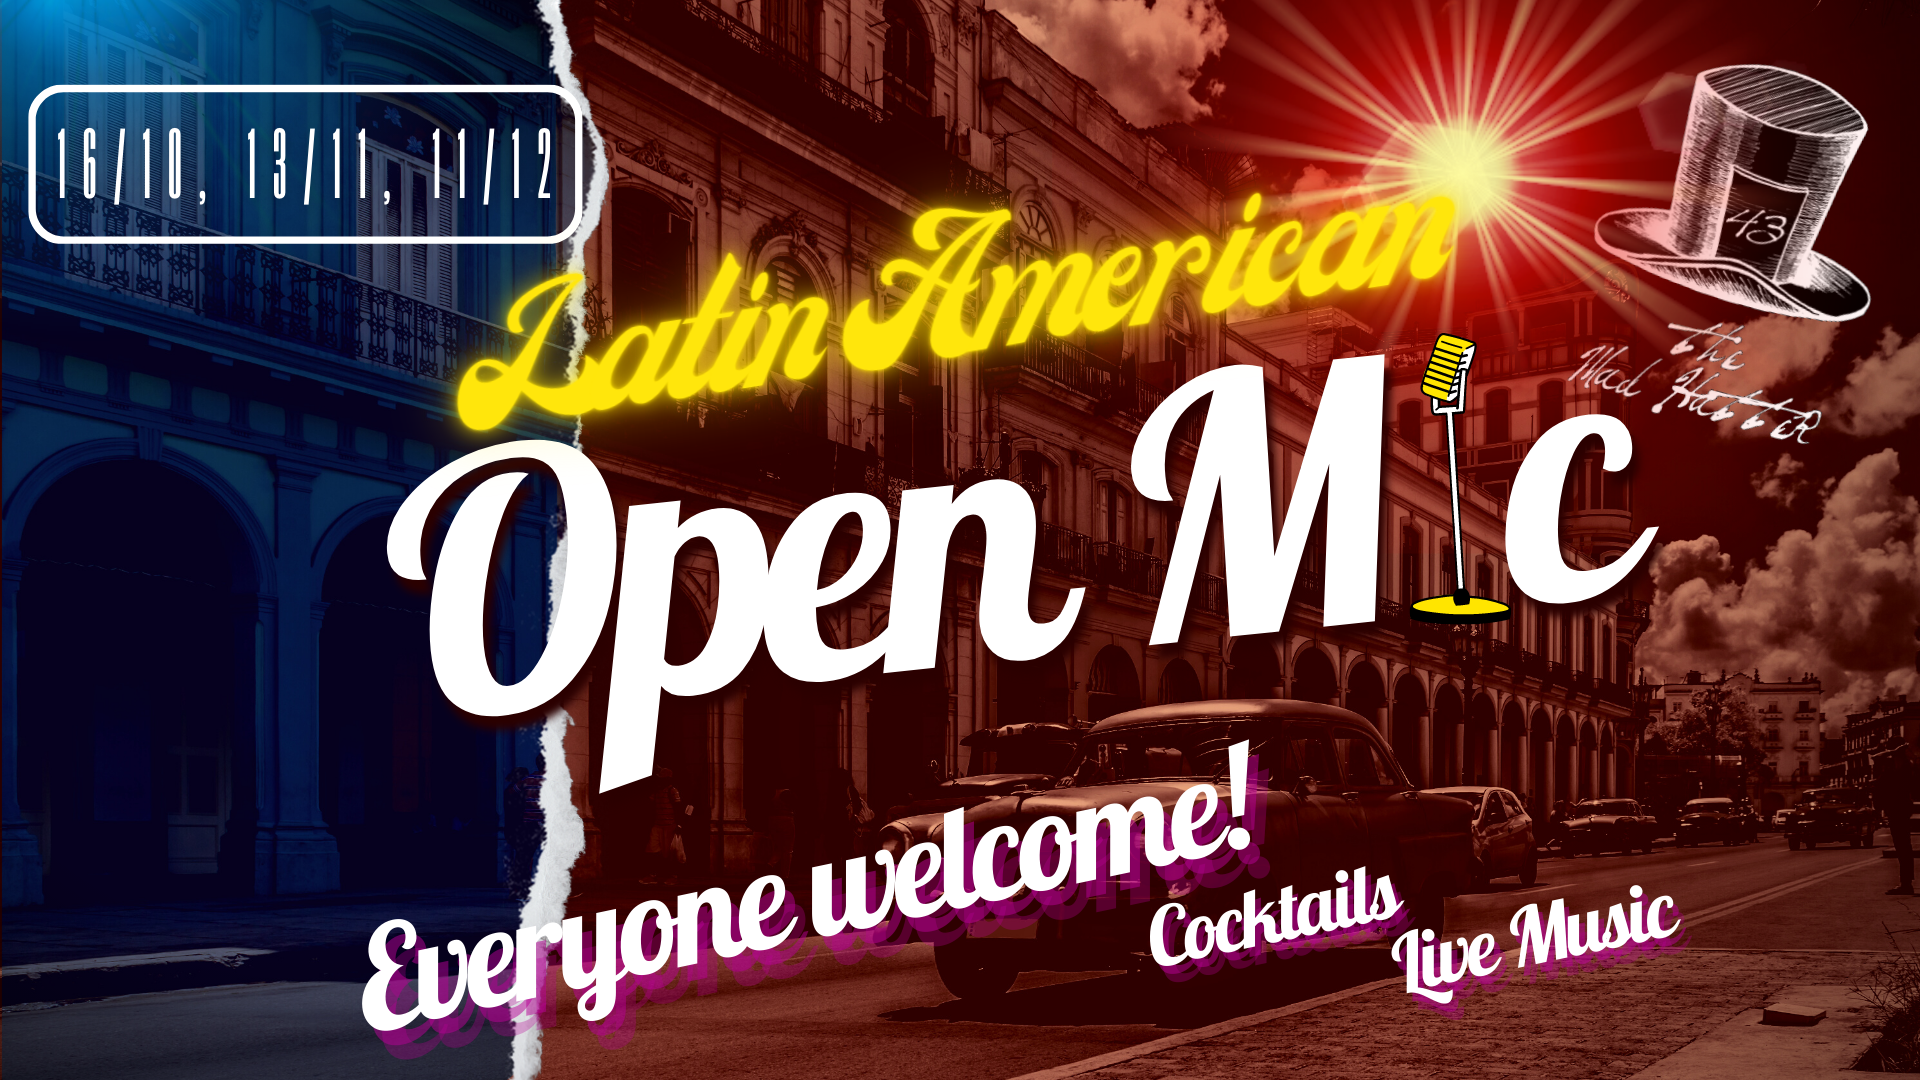 Latin American Open Mic Night